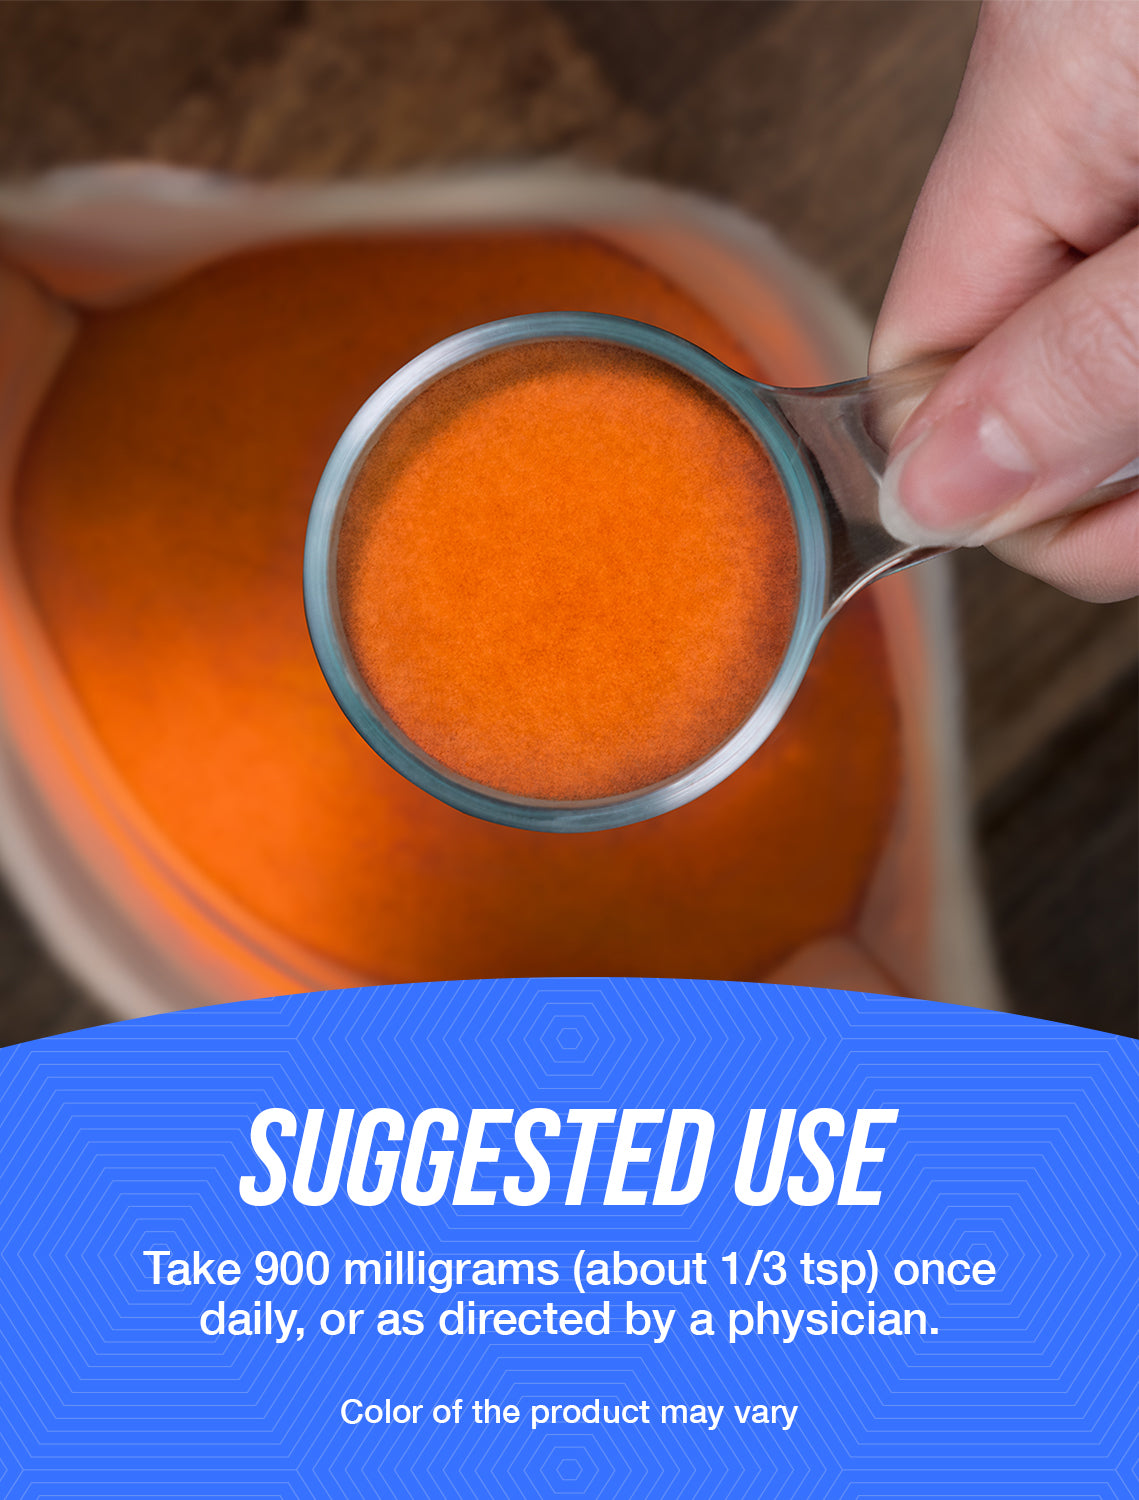 Beta carotene powder suggested use image